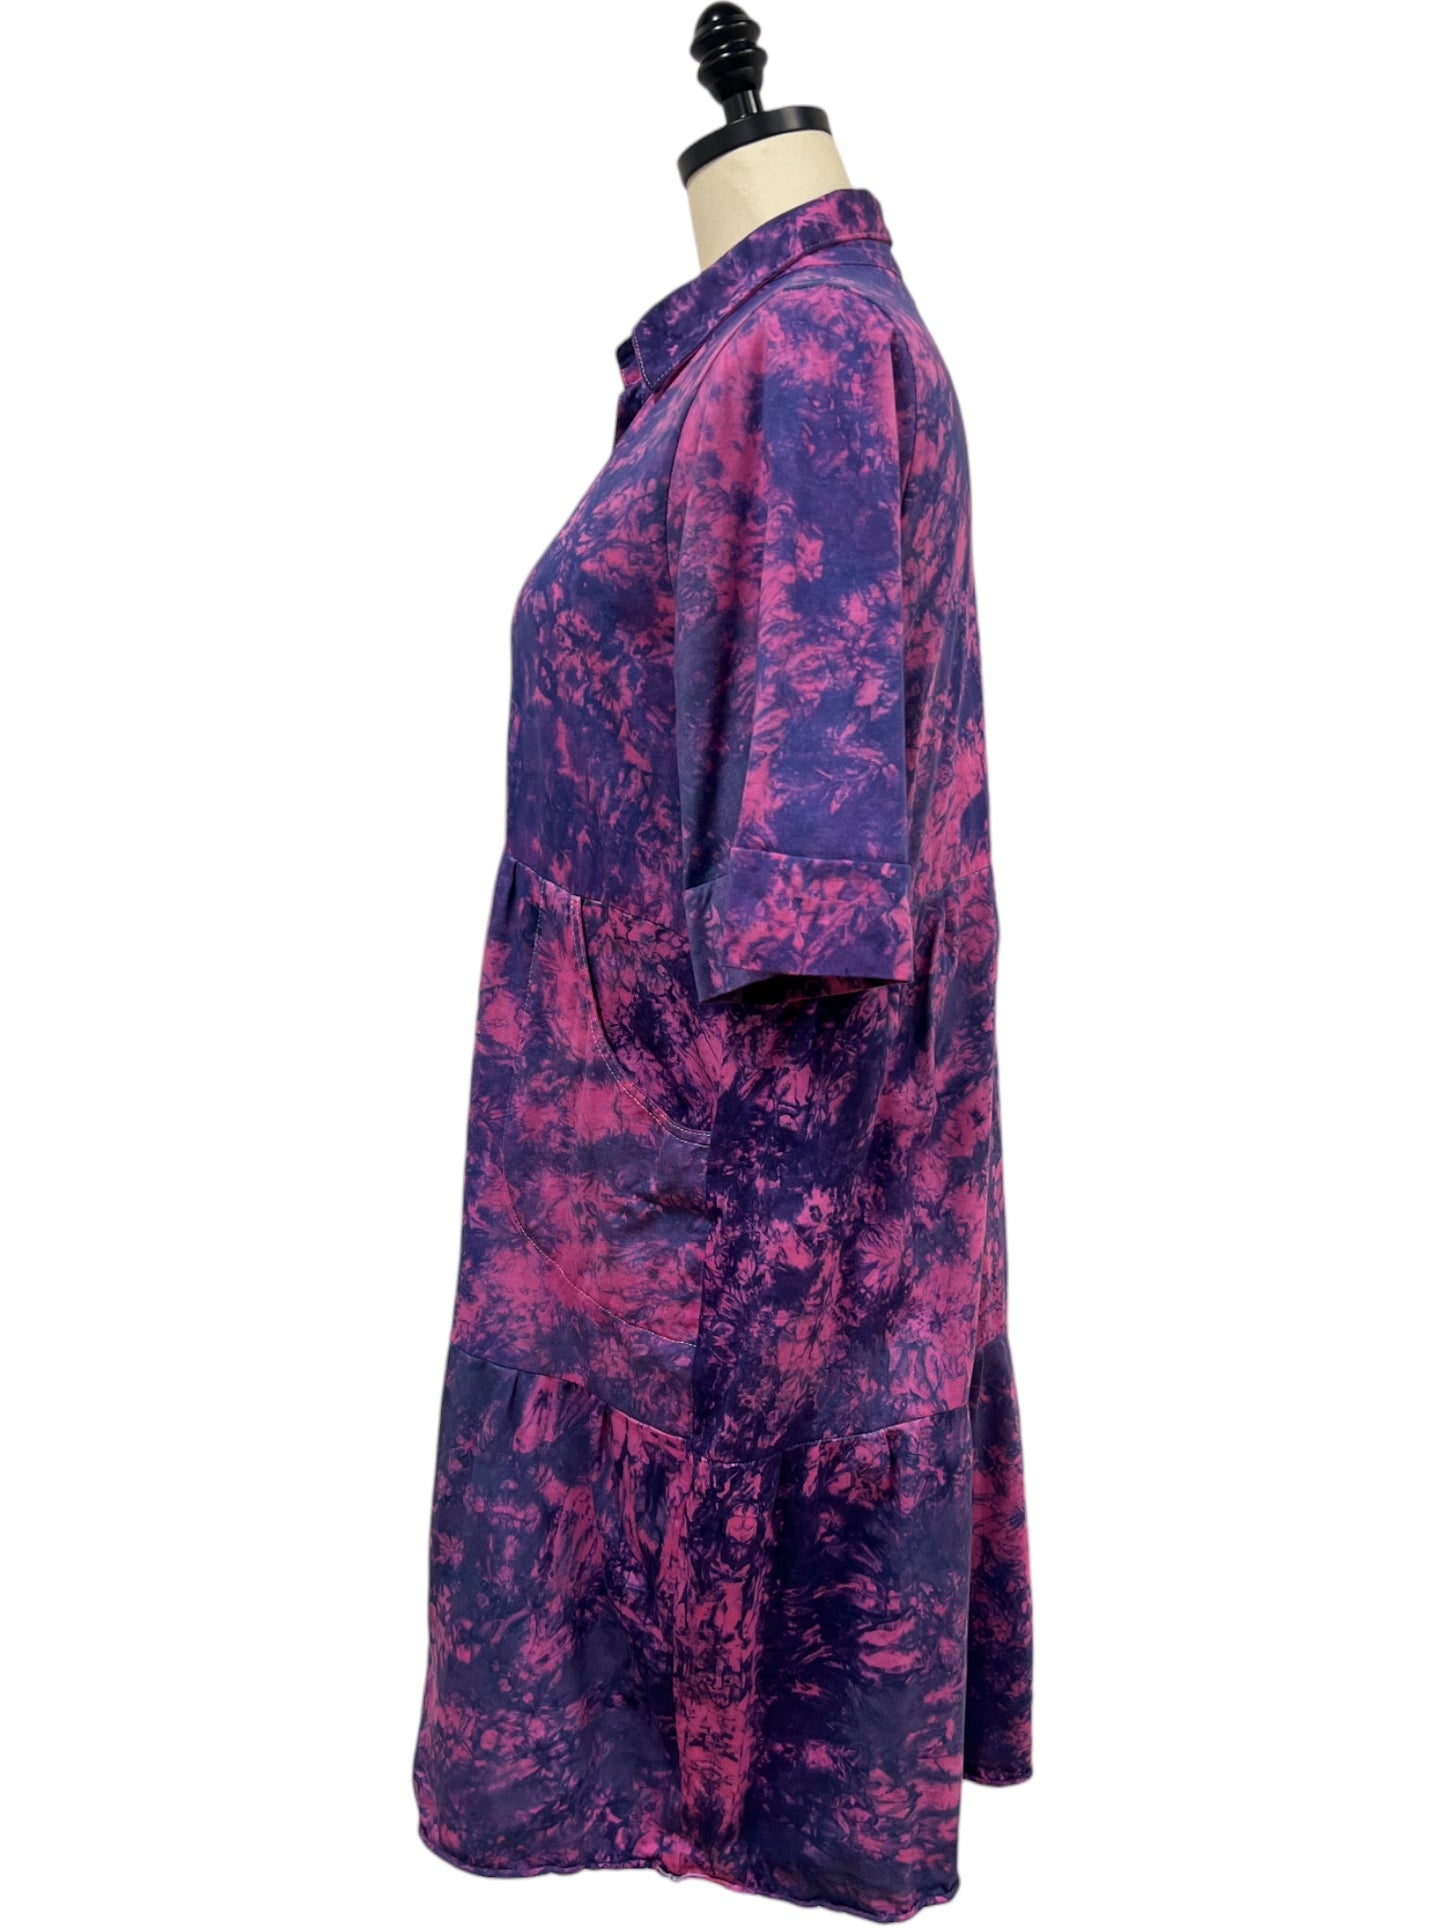 Una Dress in Fuchsia Tie Dye